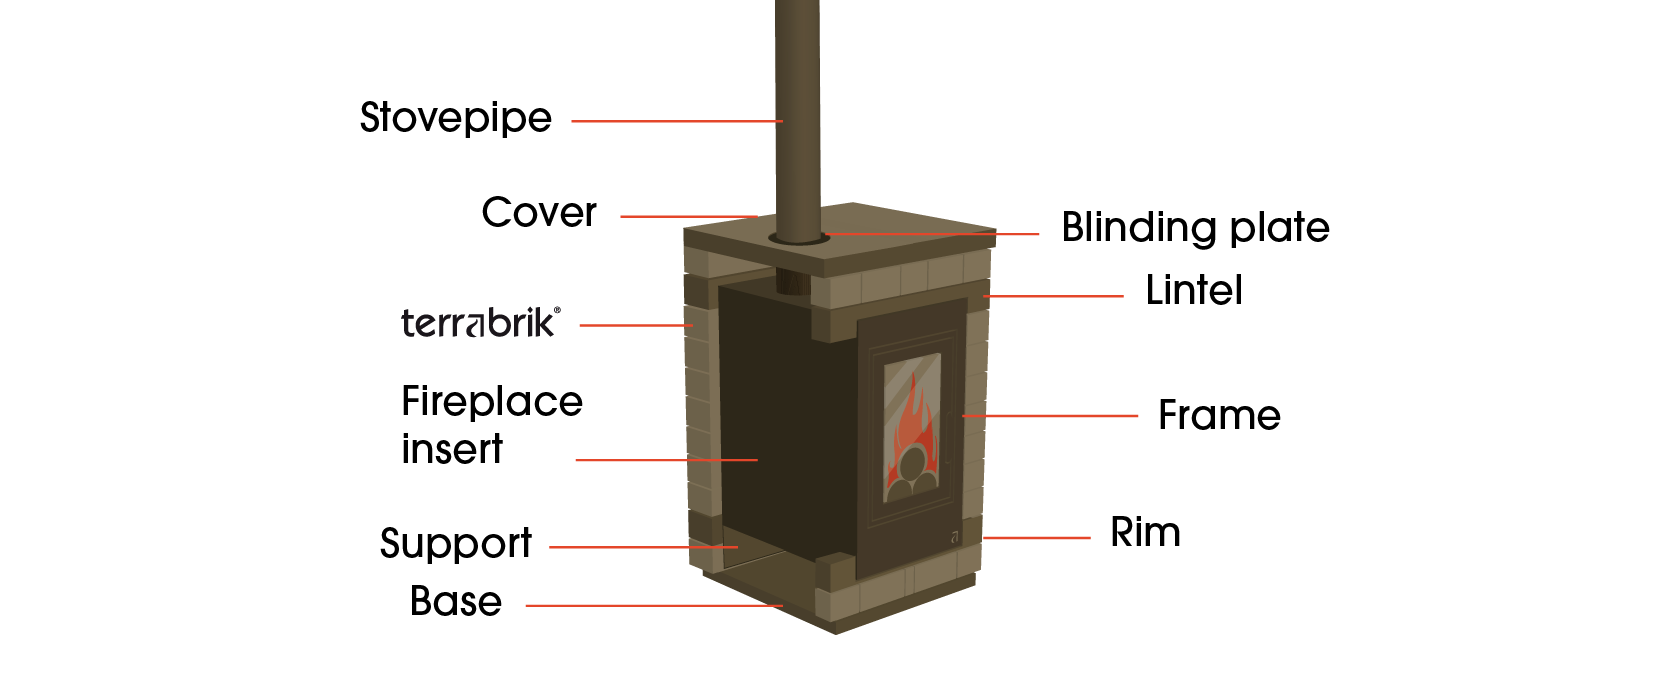 an efficient firebox, optimized for heat-accumulation